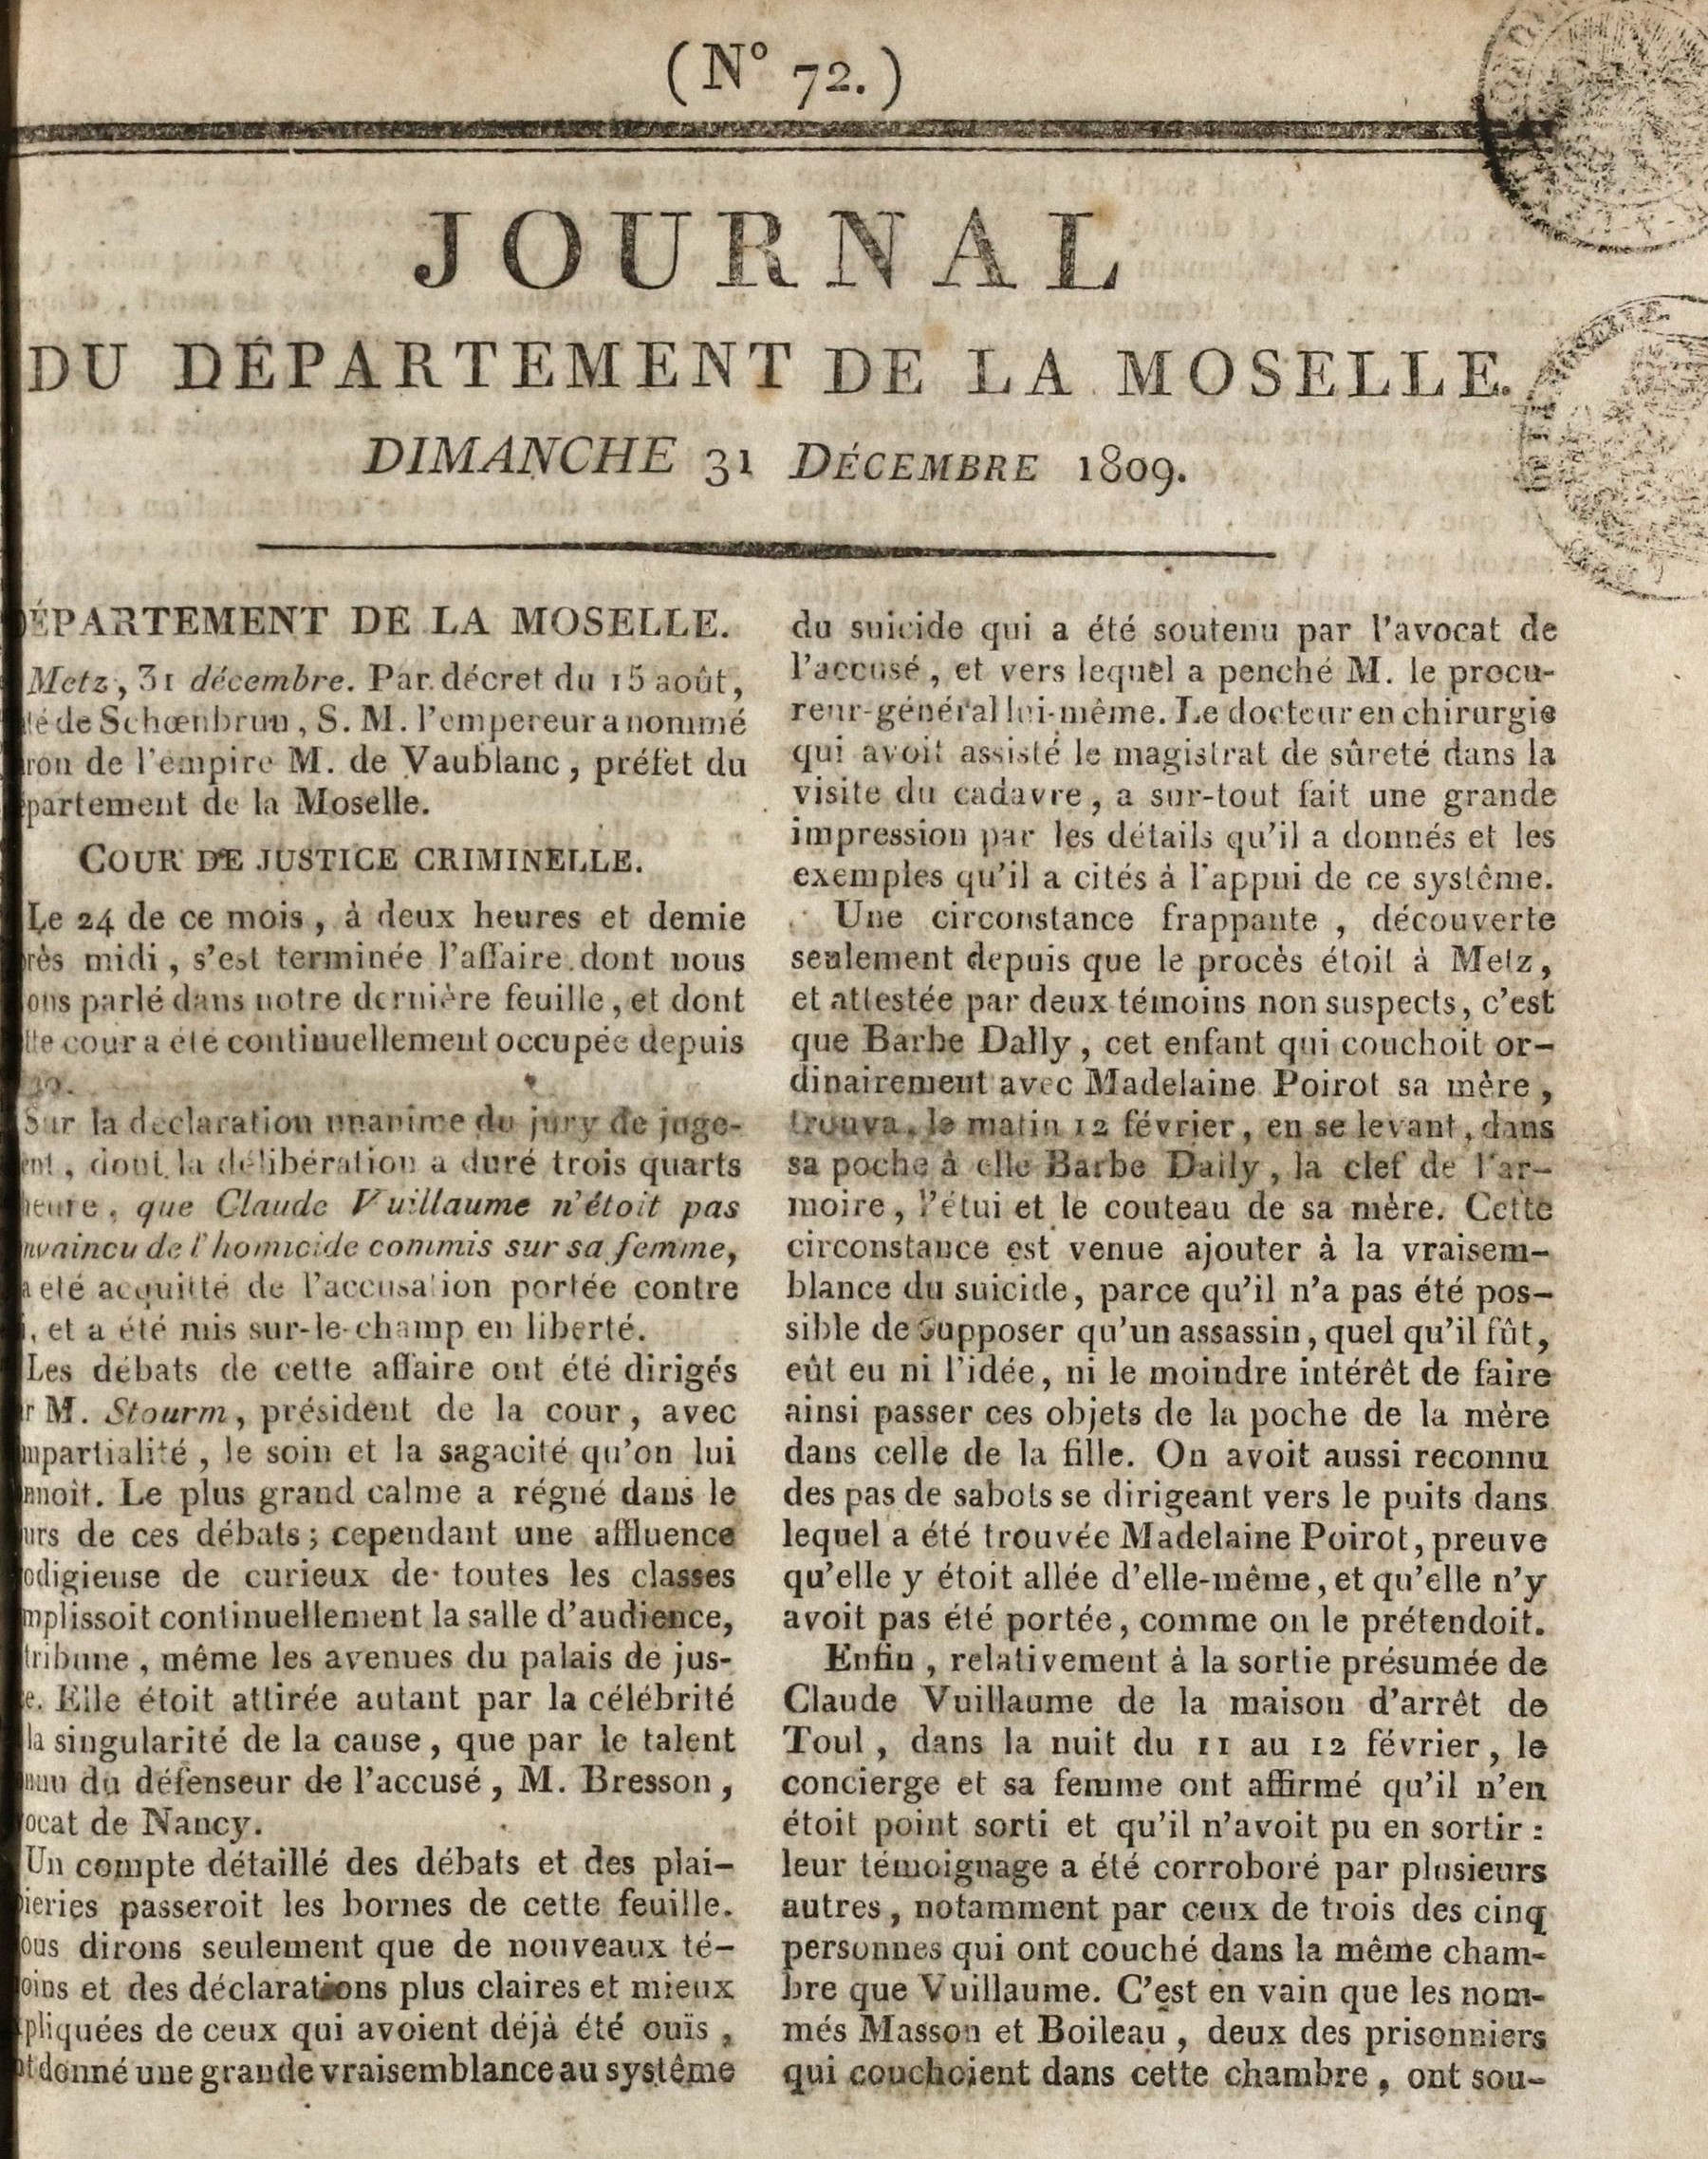 Contenu du Journal du Département de la Moselle